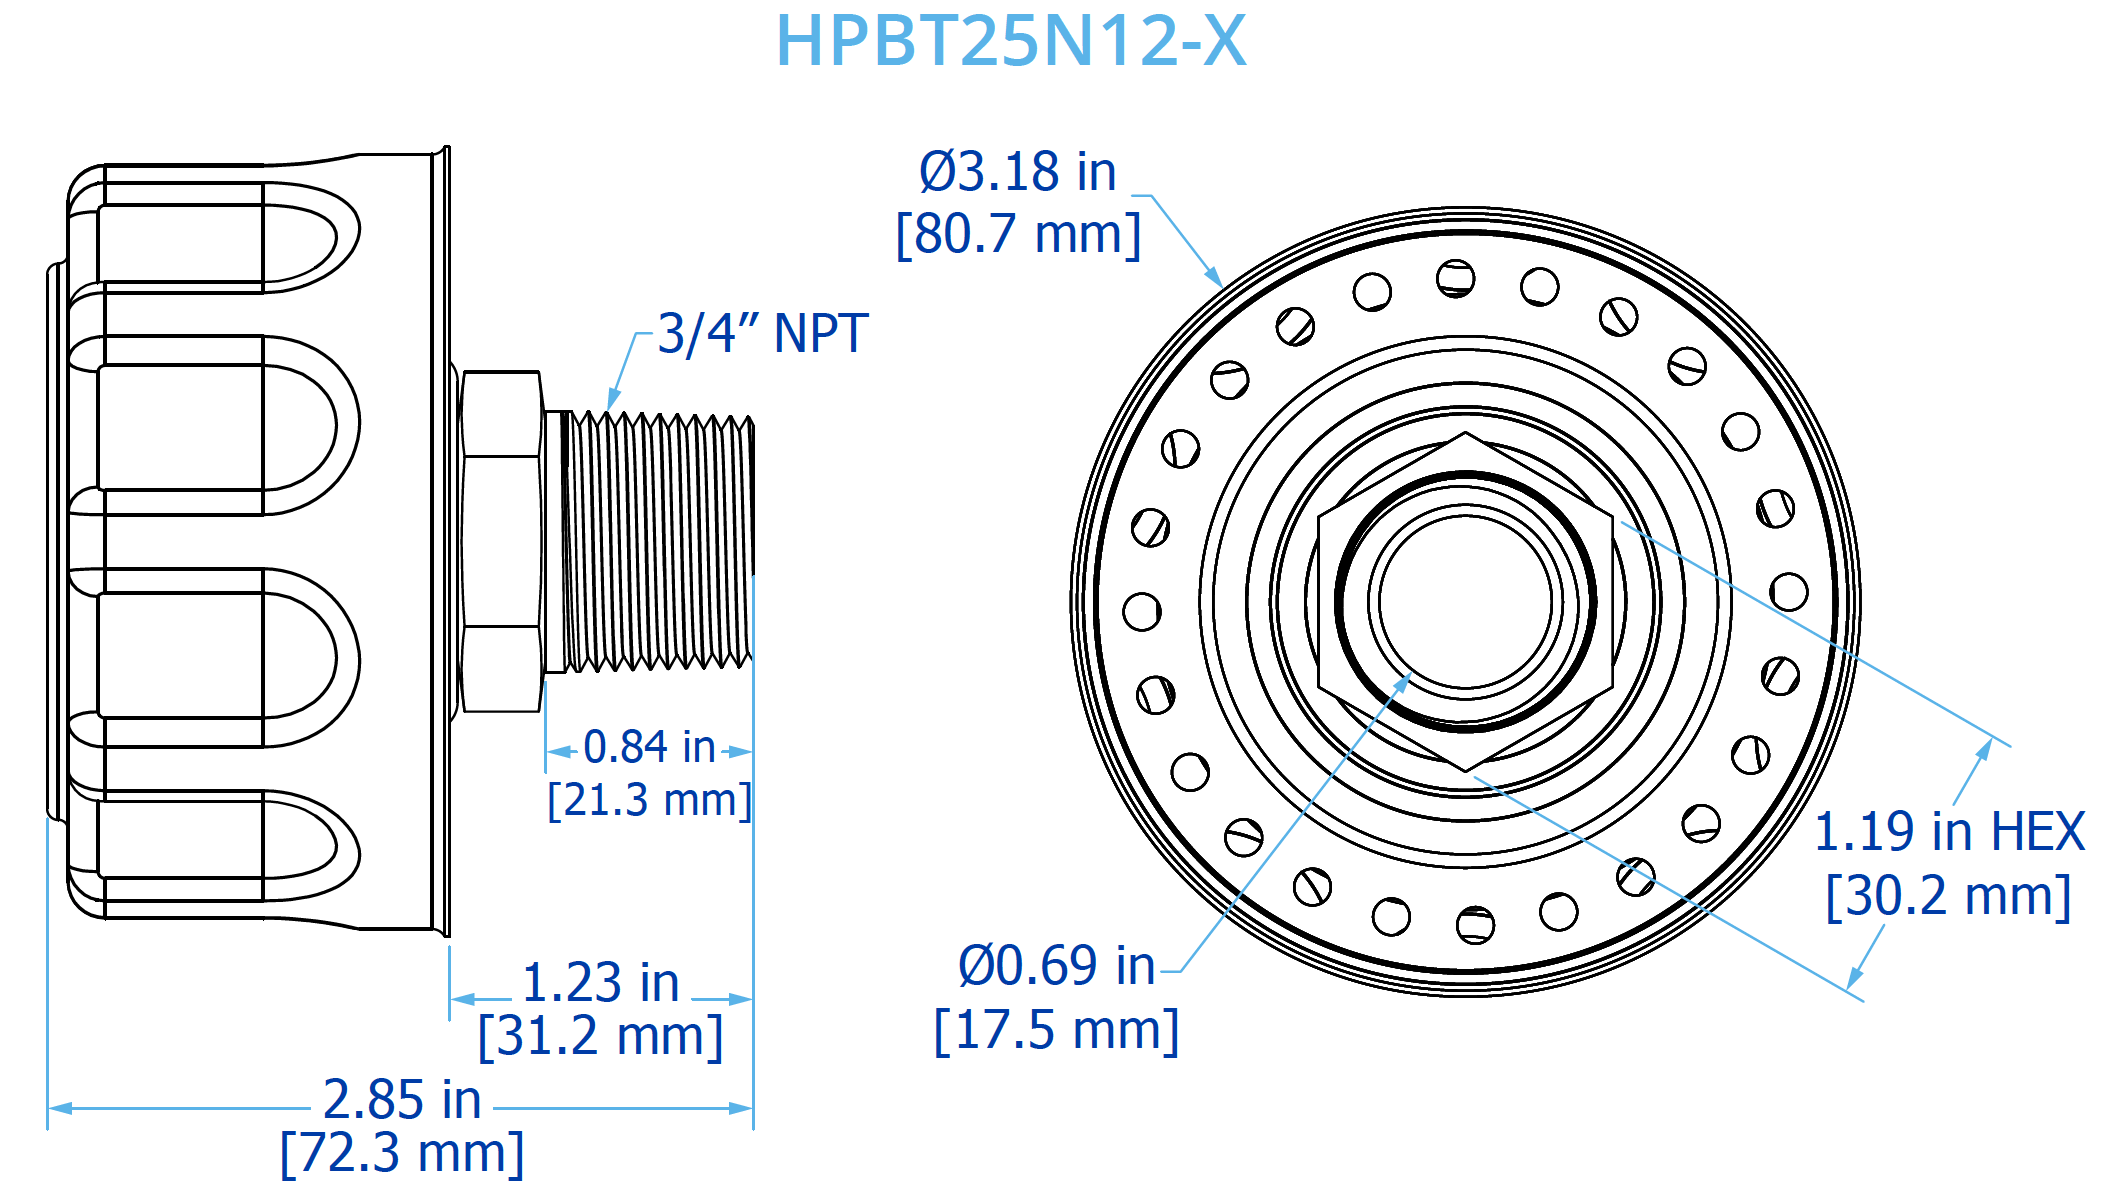 HPBT25N12-X